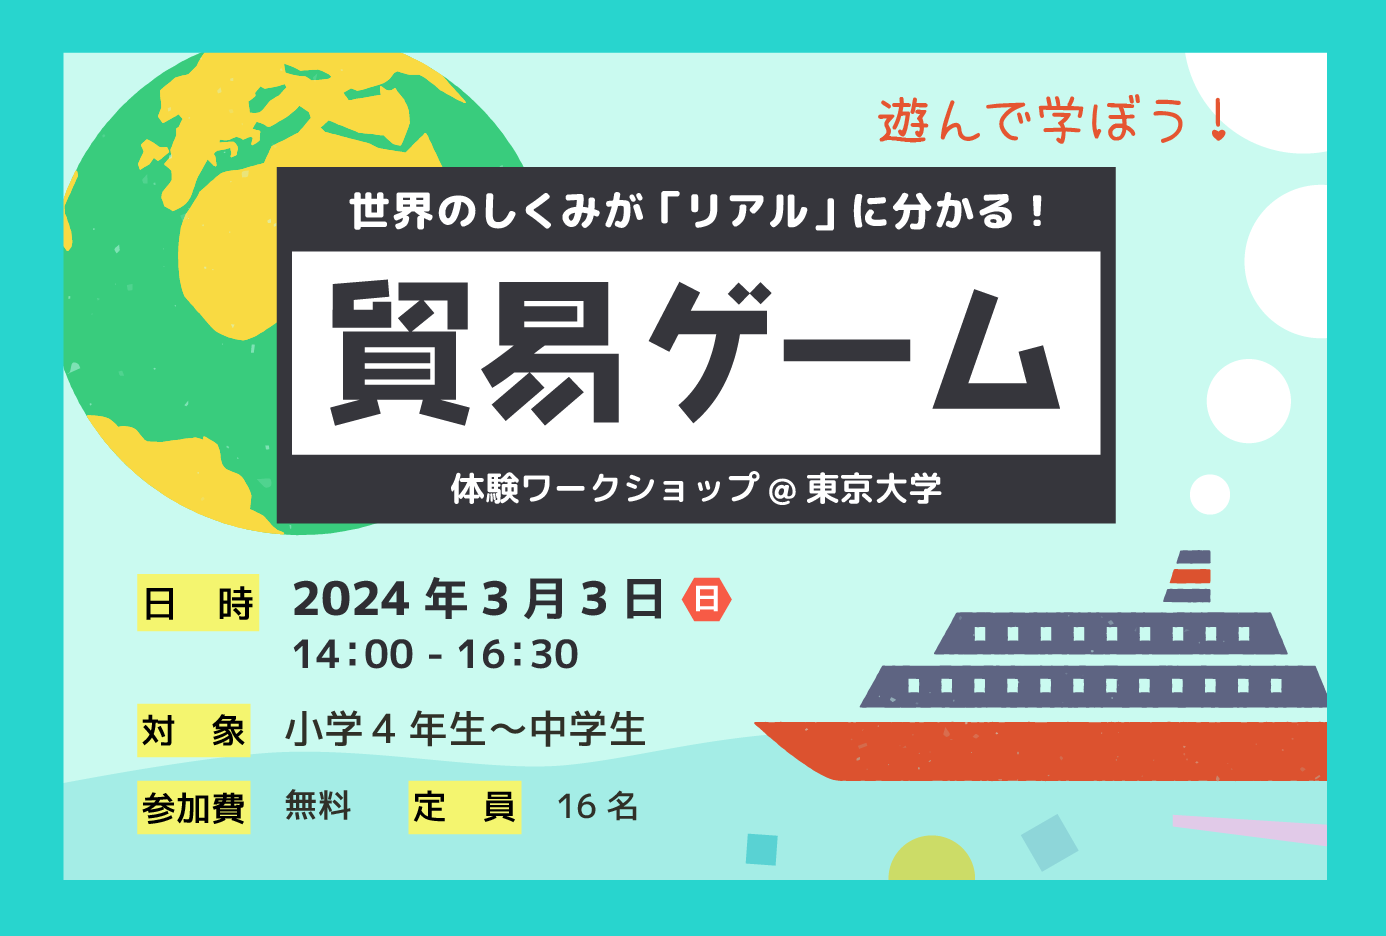 「貿易ゲーム体験ワークショップ2024 at 東京大学」参加者募集のお知らせ